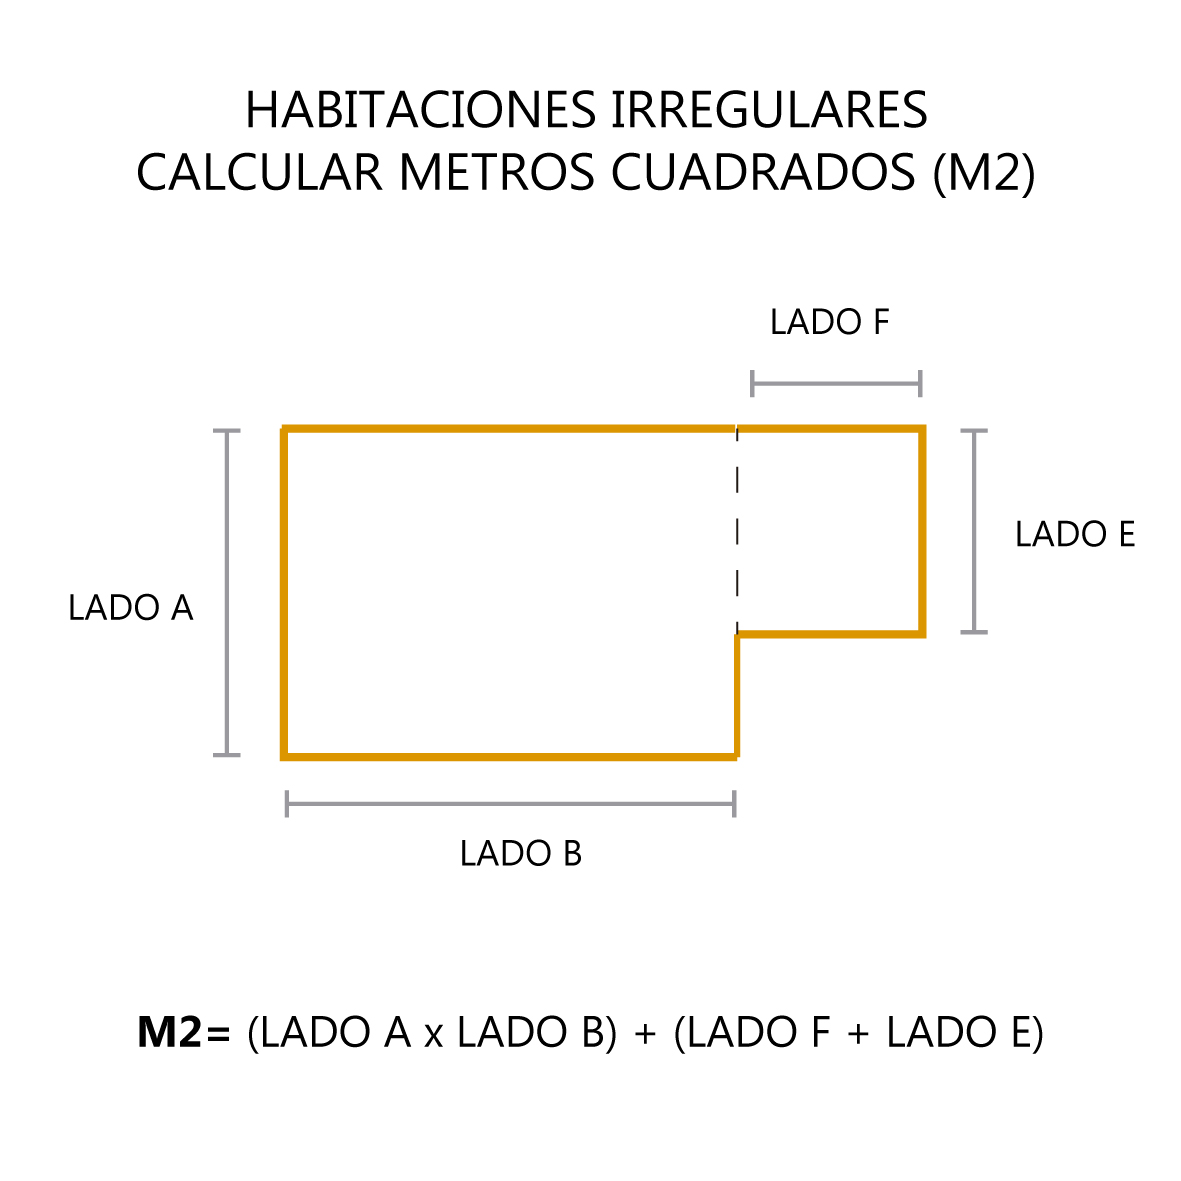 ponerse en cuclillas análisis Heredero Cómo calcular los metros cuadrados de piso y zócalos? - CB Group